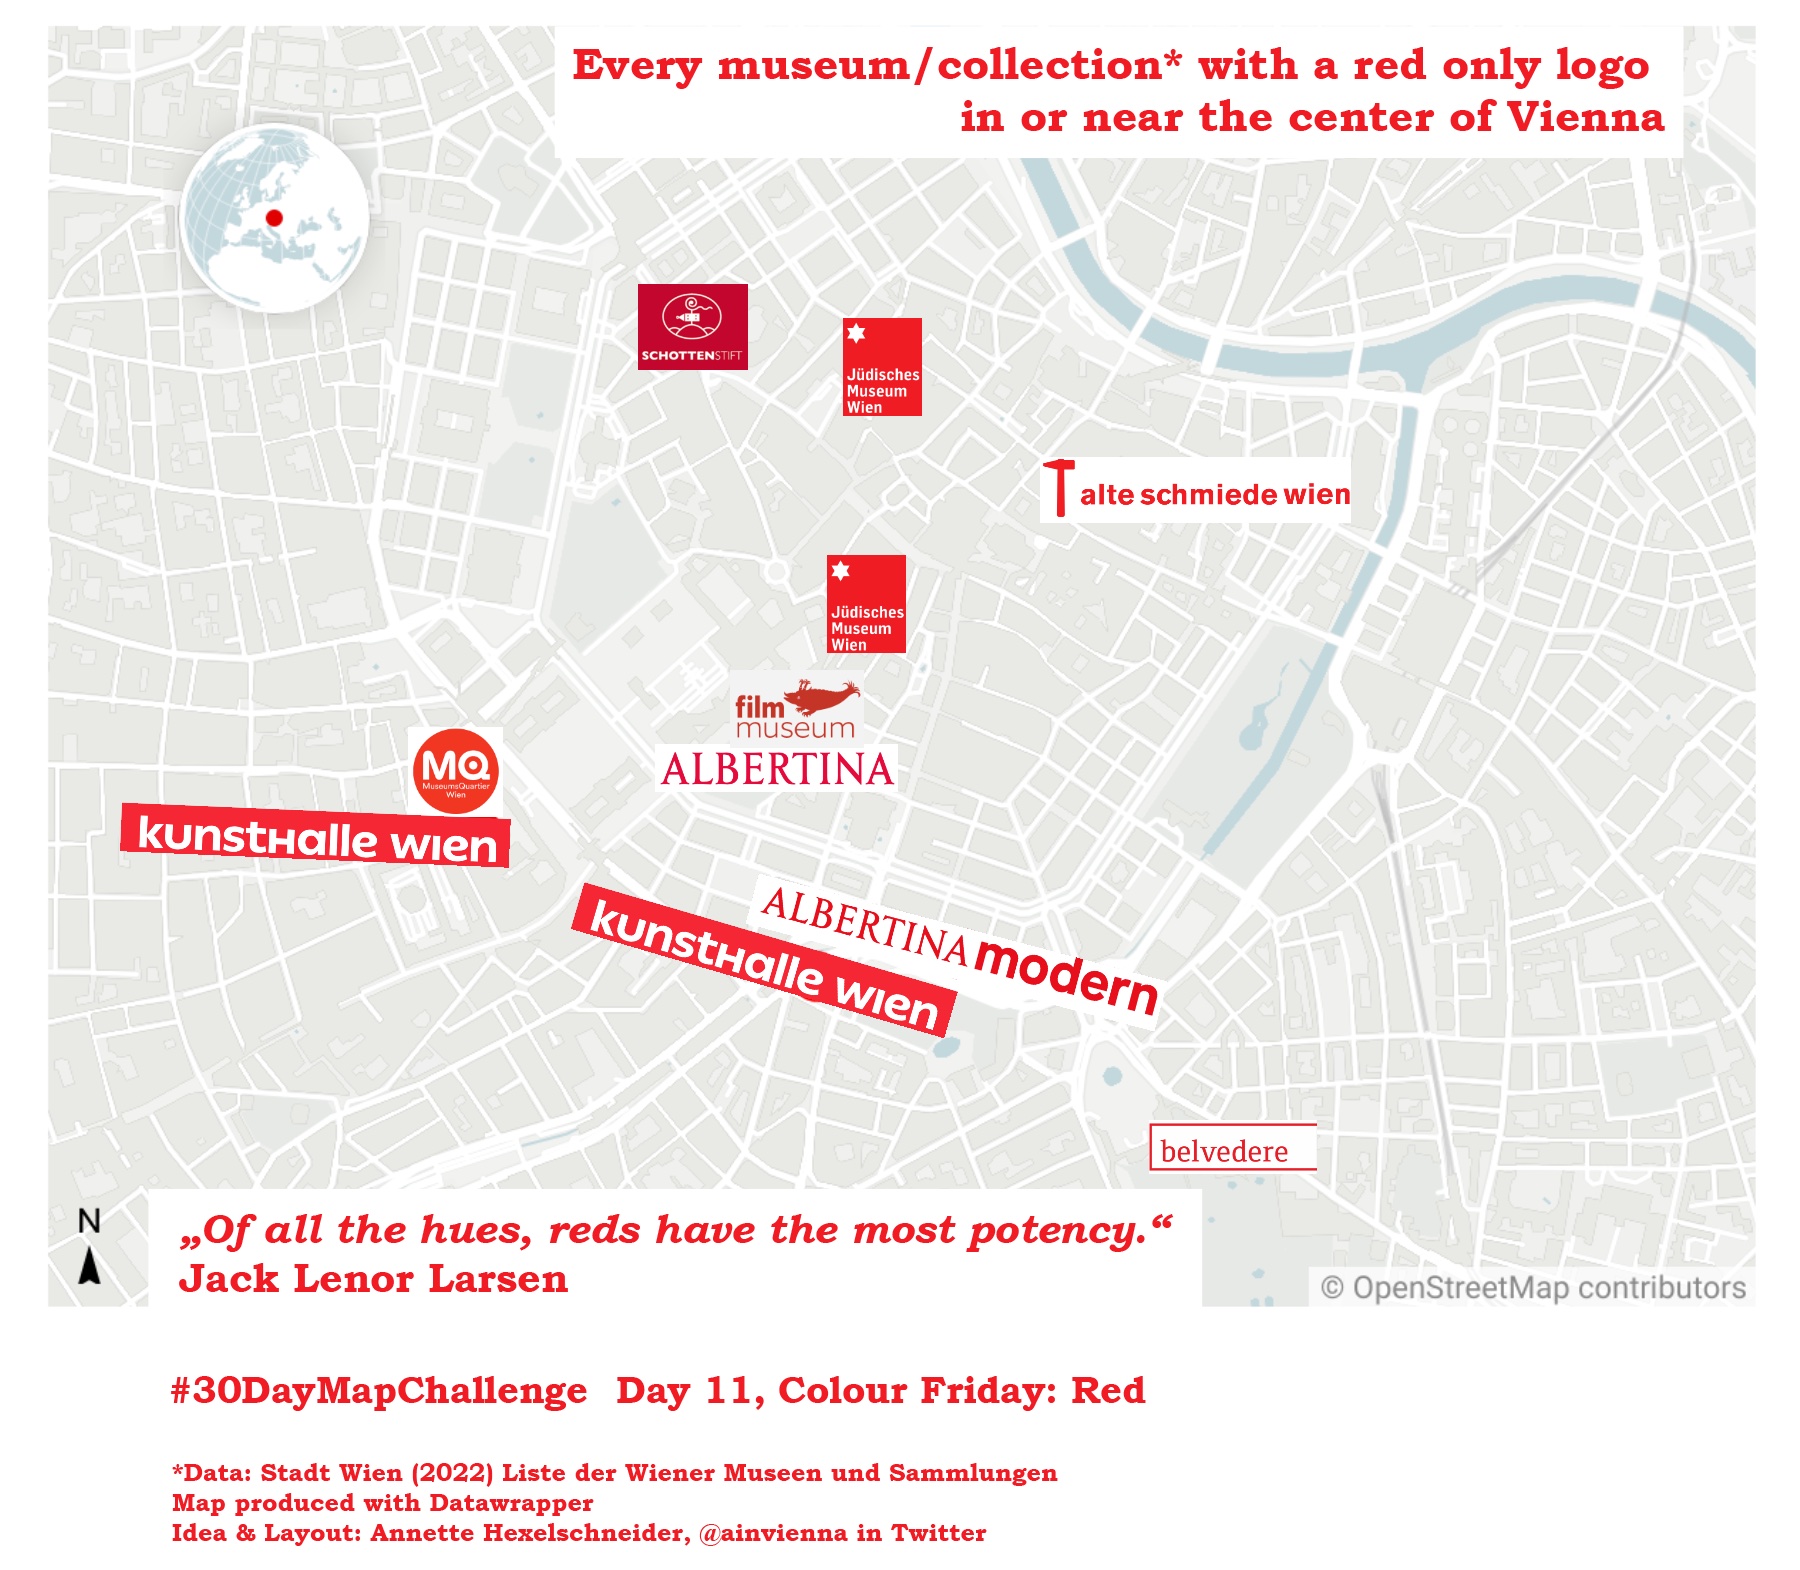 #30DayMapChallenge Kreativität Wien Innere Bezirke Museen/Sammlungen mit einem roten Logo